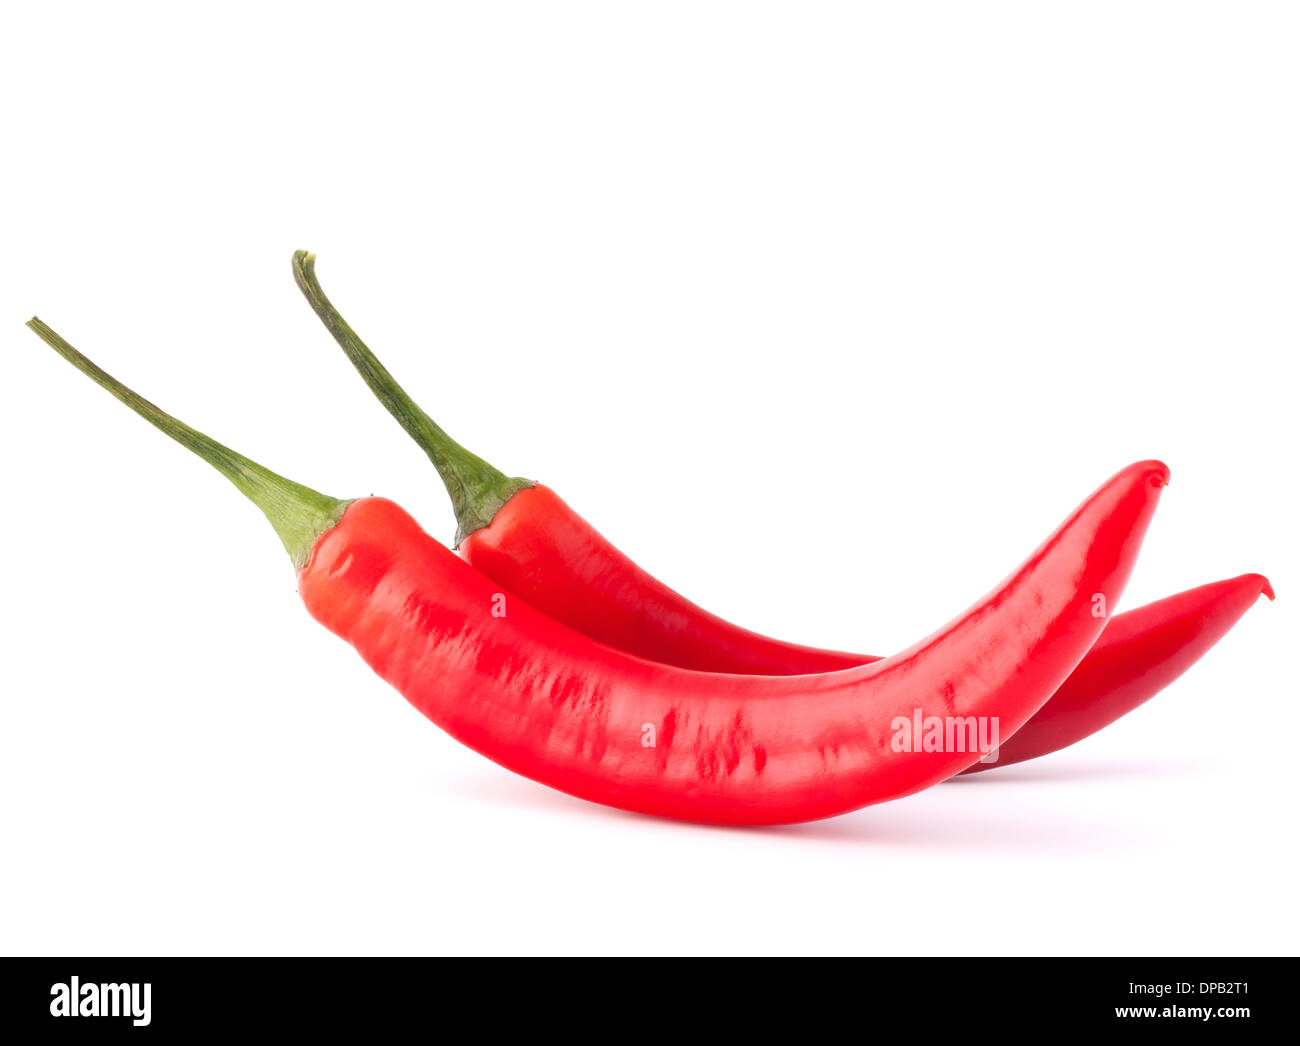 Scharfe rote Chili oder Cayennepfeffer isoliert auf weißem Hintergrund Ausschnitt Stockfoto